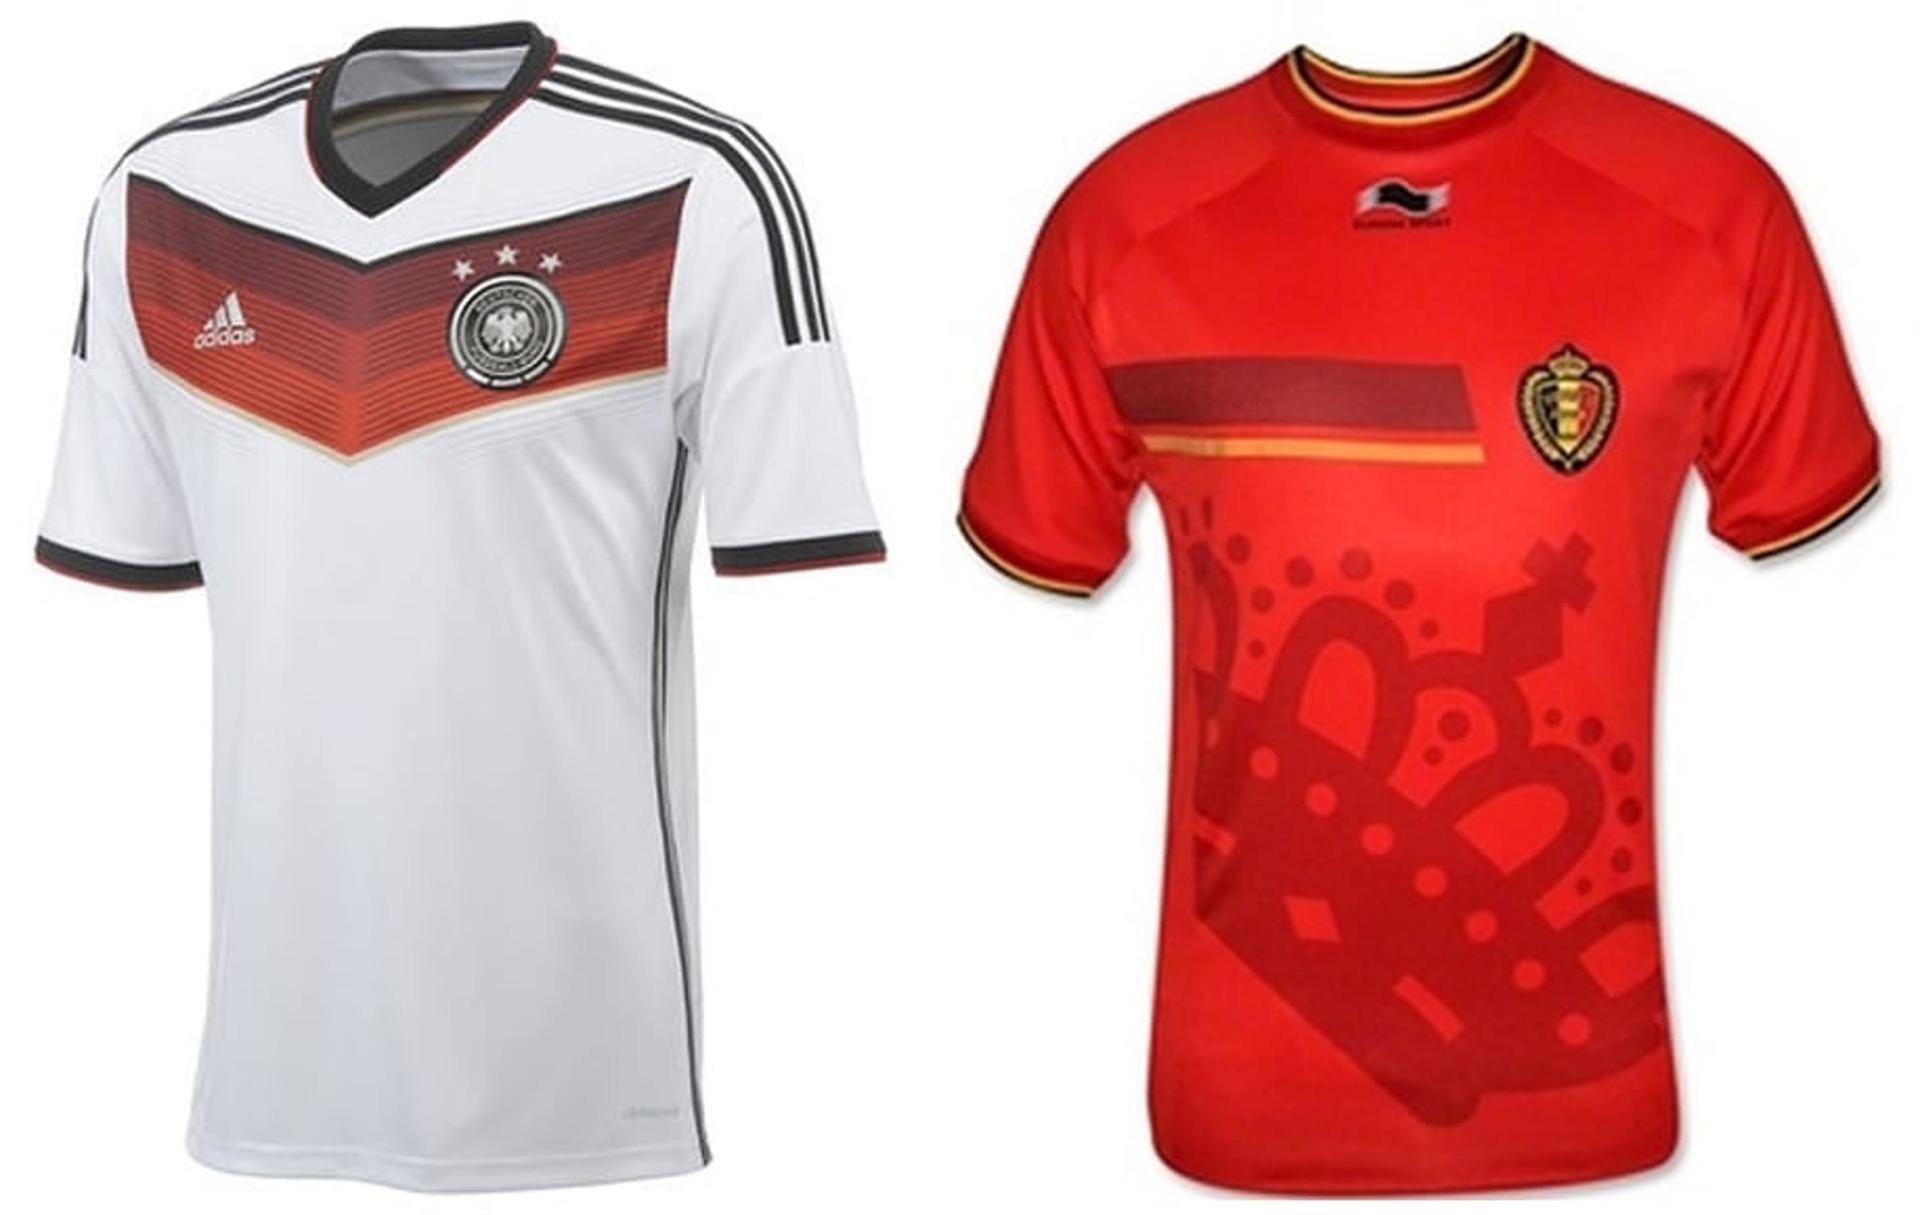 Uniformes Seleções Copa 2014 - Alemanha e Bélgica (Fotos: Divulgação)